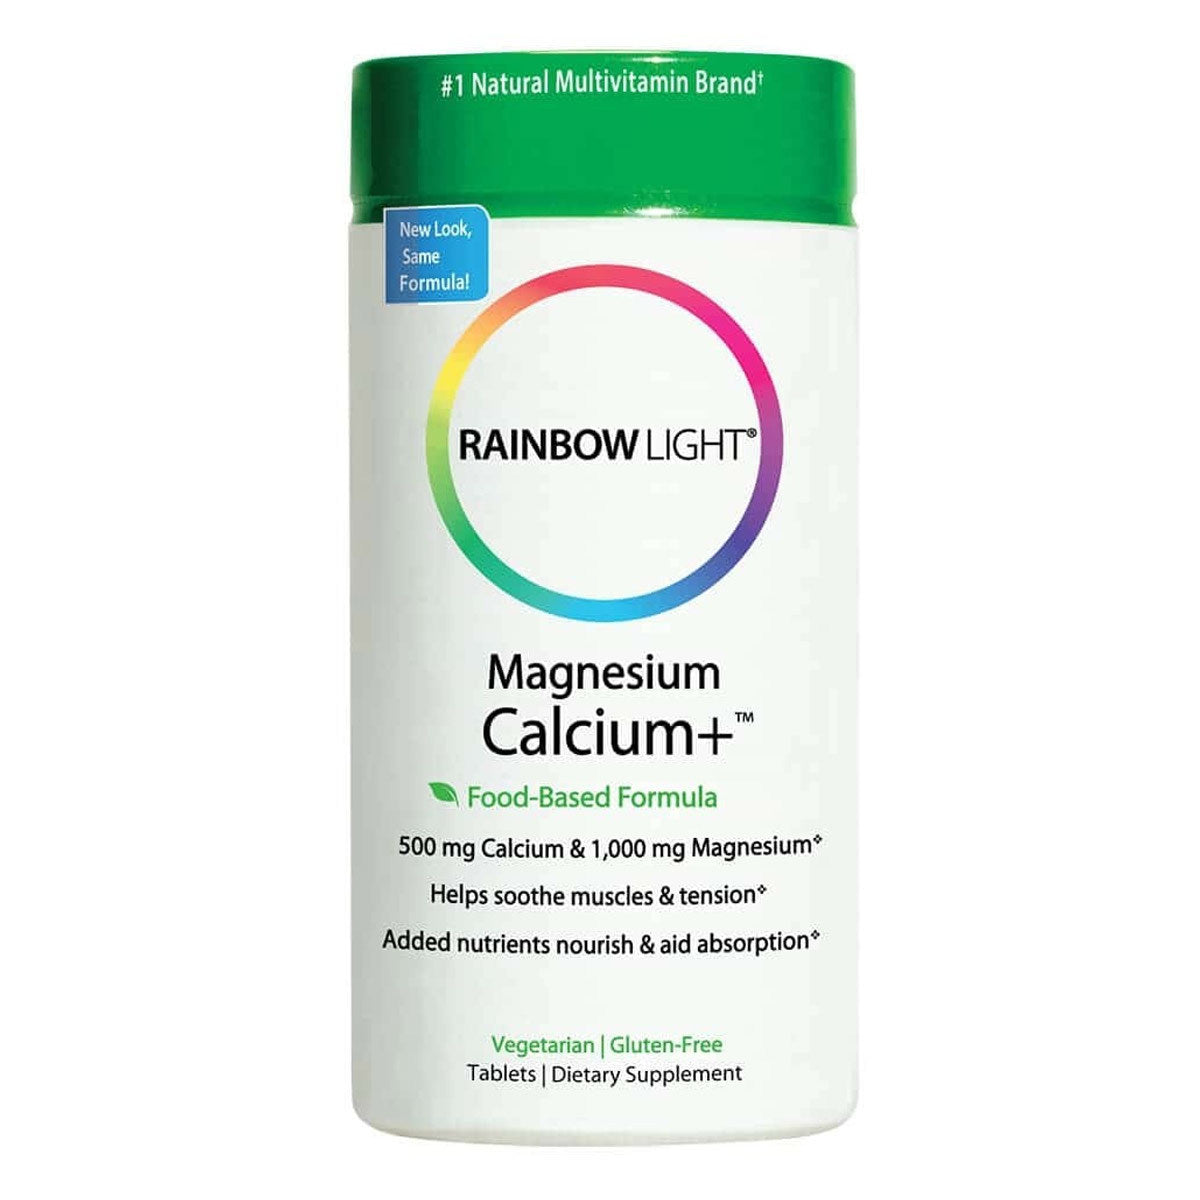 Primary image of Magnesium Calcium +